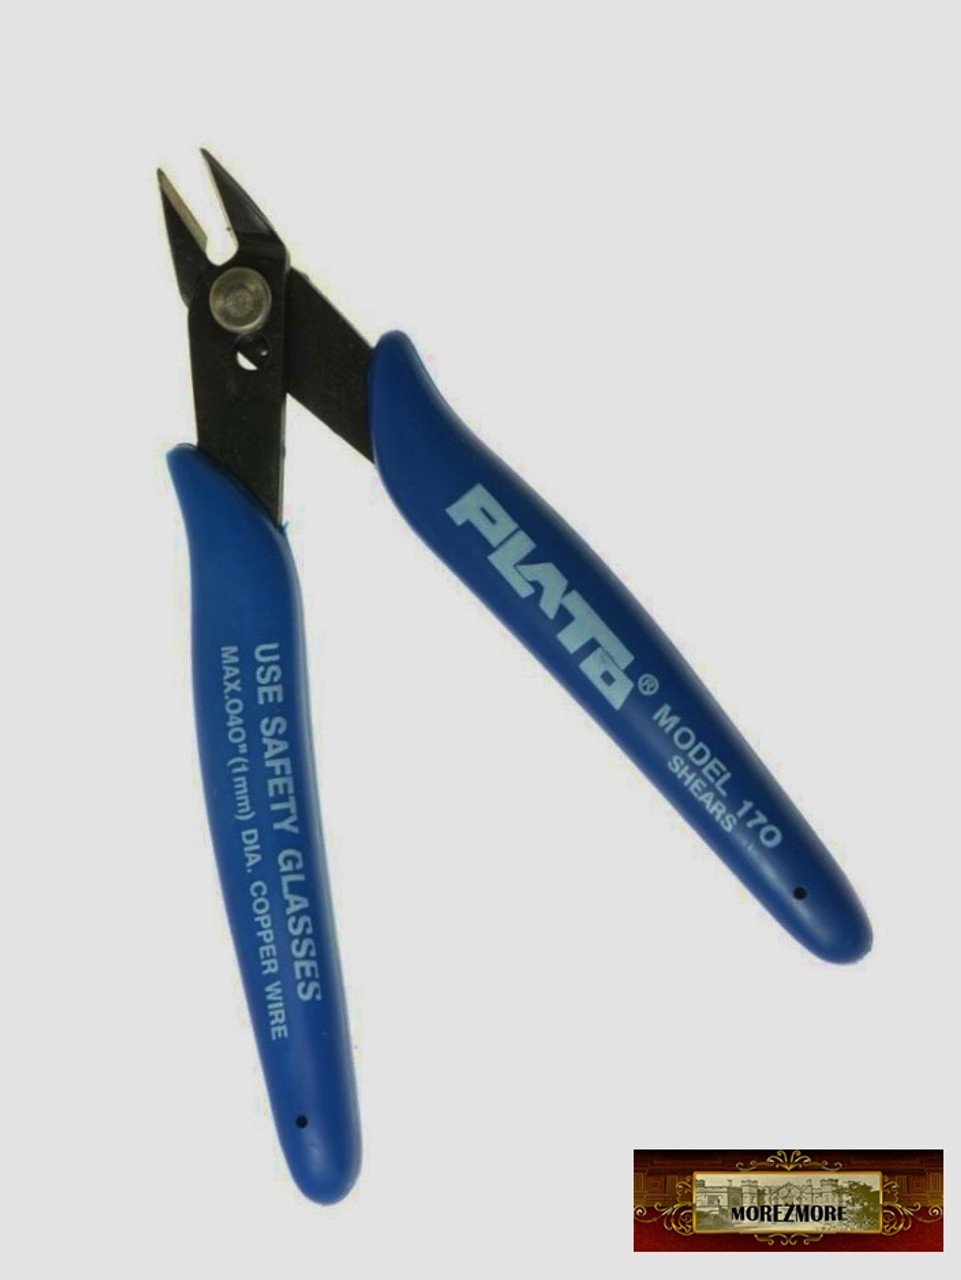 M00947 MOREZMORE Plato Best Mini Wire Cutters Oblique Diagonal Side Snips